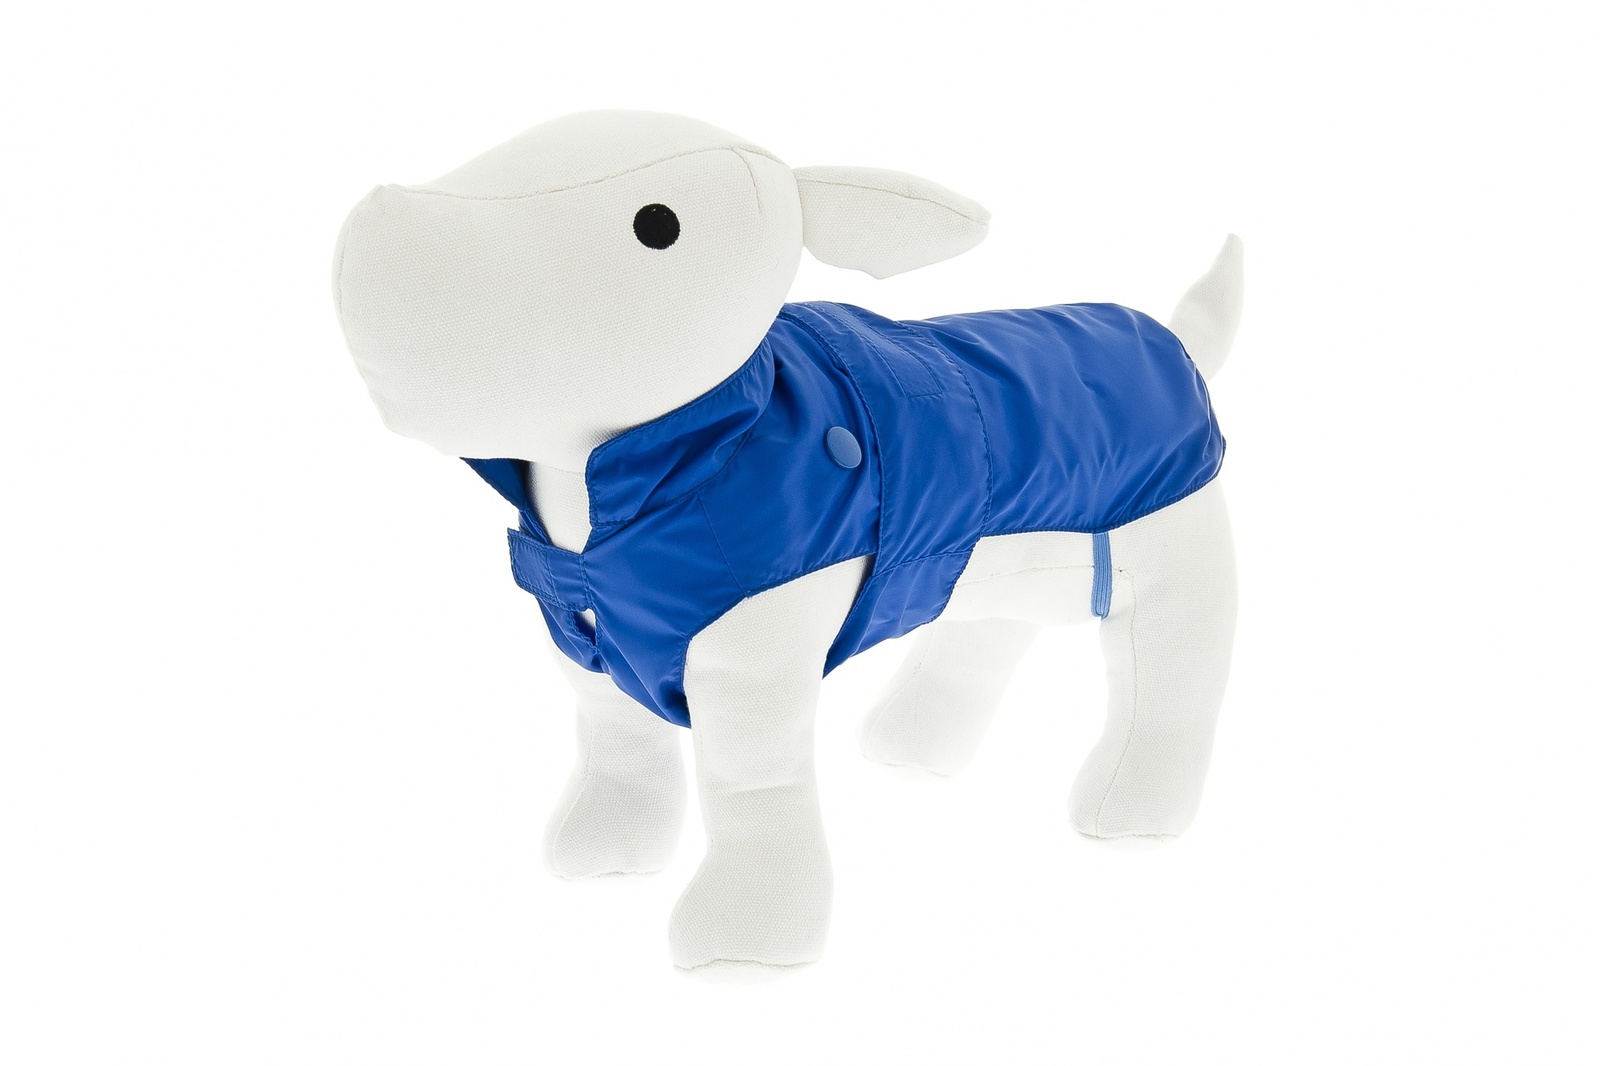 Ferribiella одежда Ferribiella одежда утепленный плащ-дождевик со съемным подкладом Комфорт, синий (30 см)